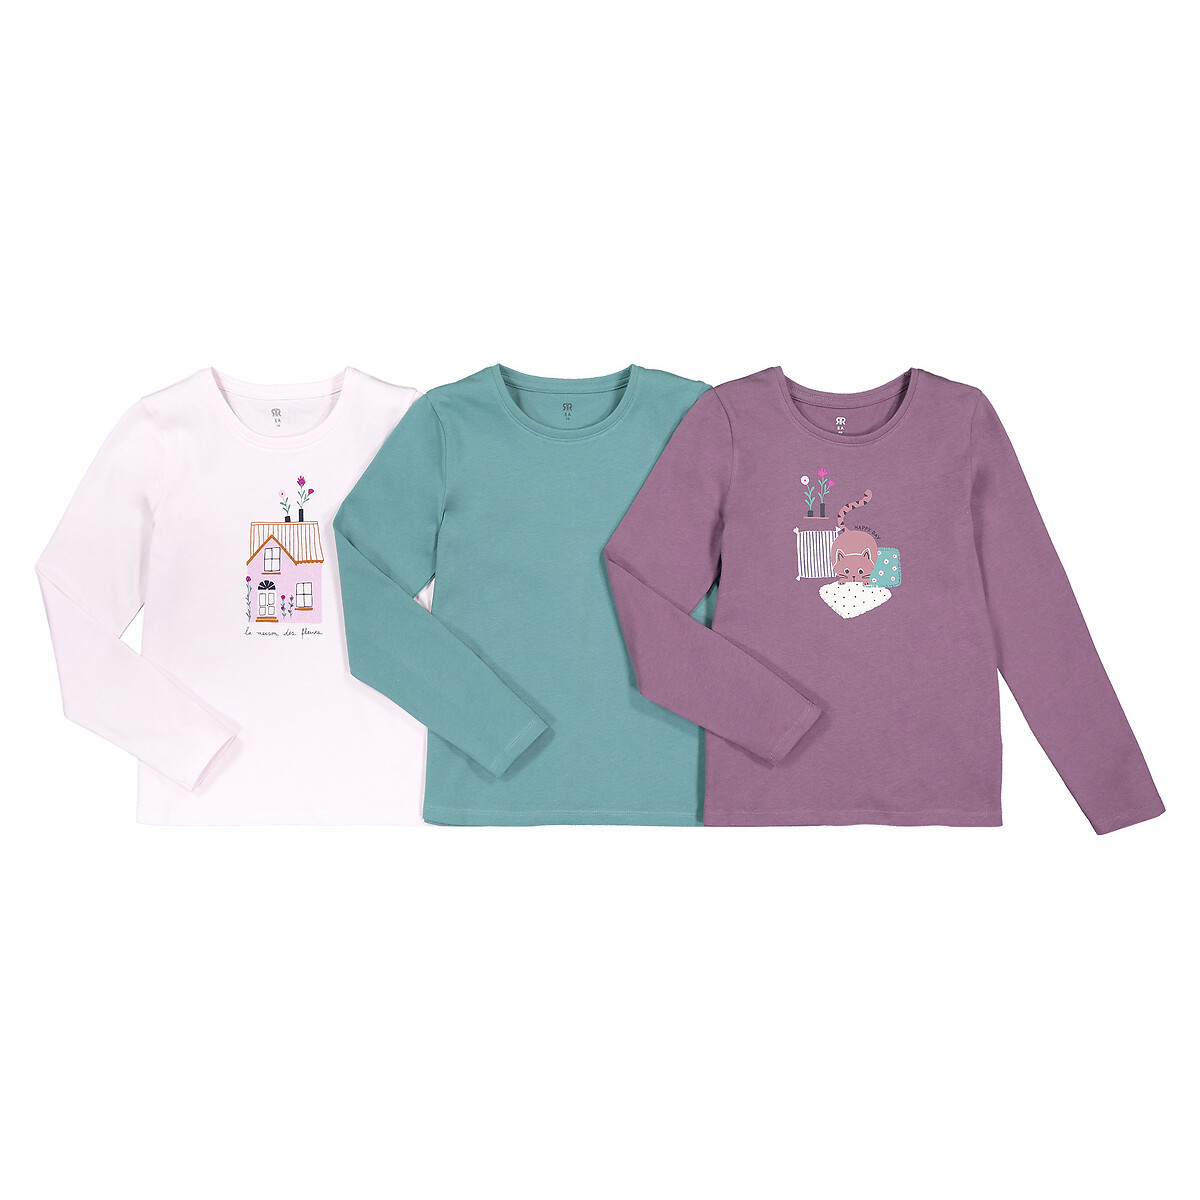 Комплект из 3 футболок из LaRedoute Биохлопка 3-12 лет 4 года - 102 см розовый, размер 4 года - 102 см